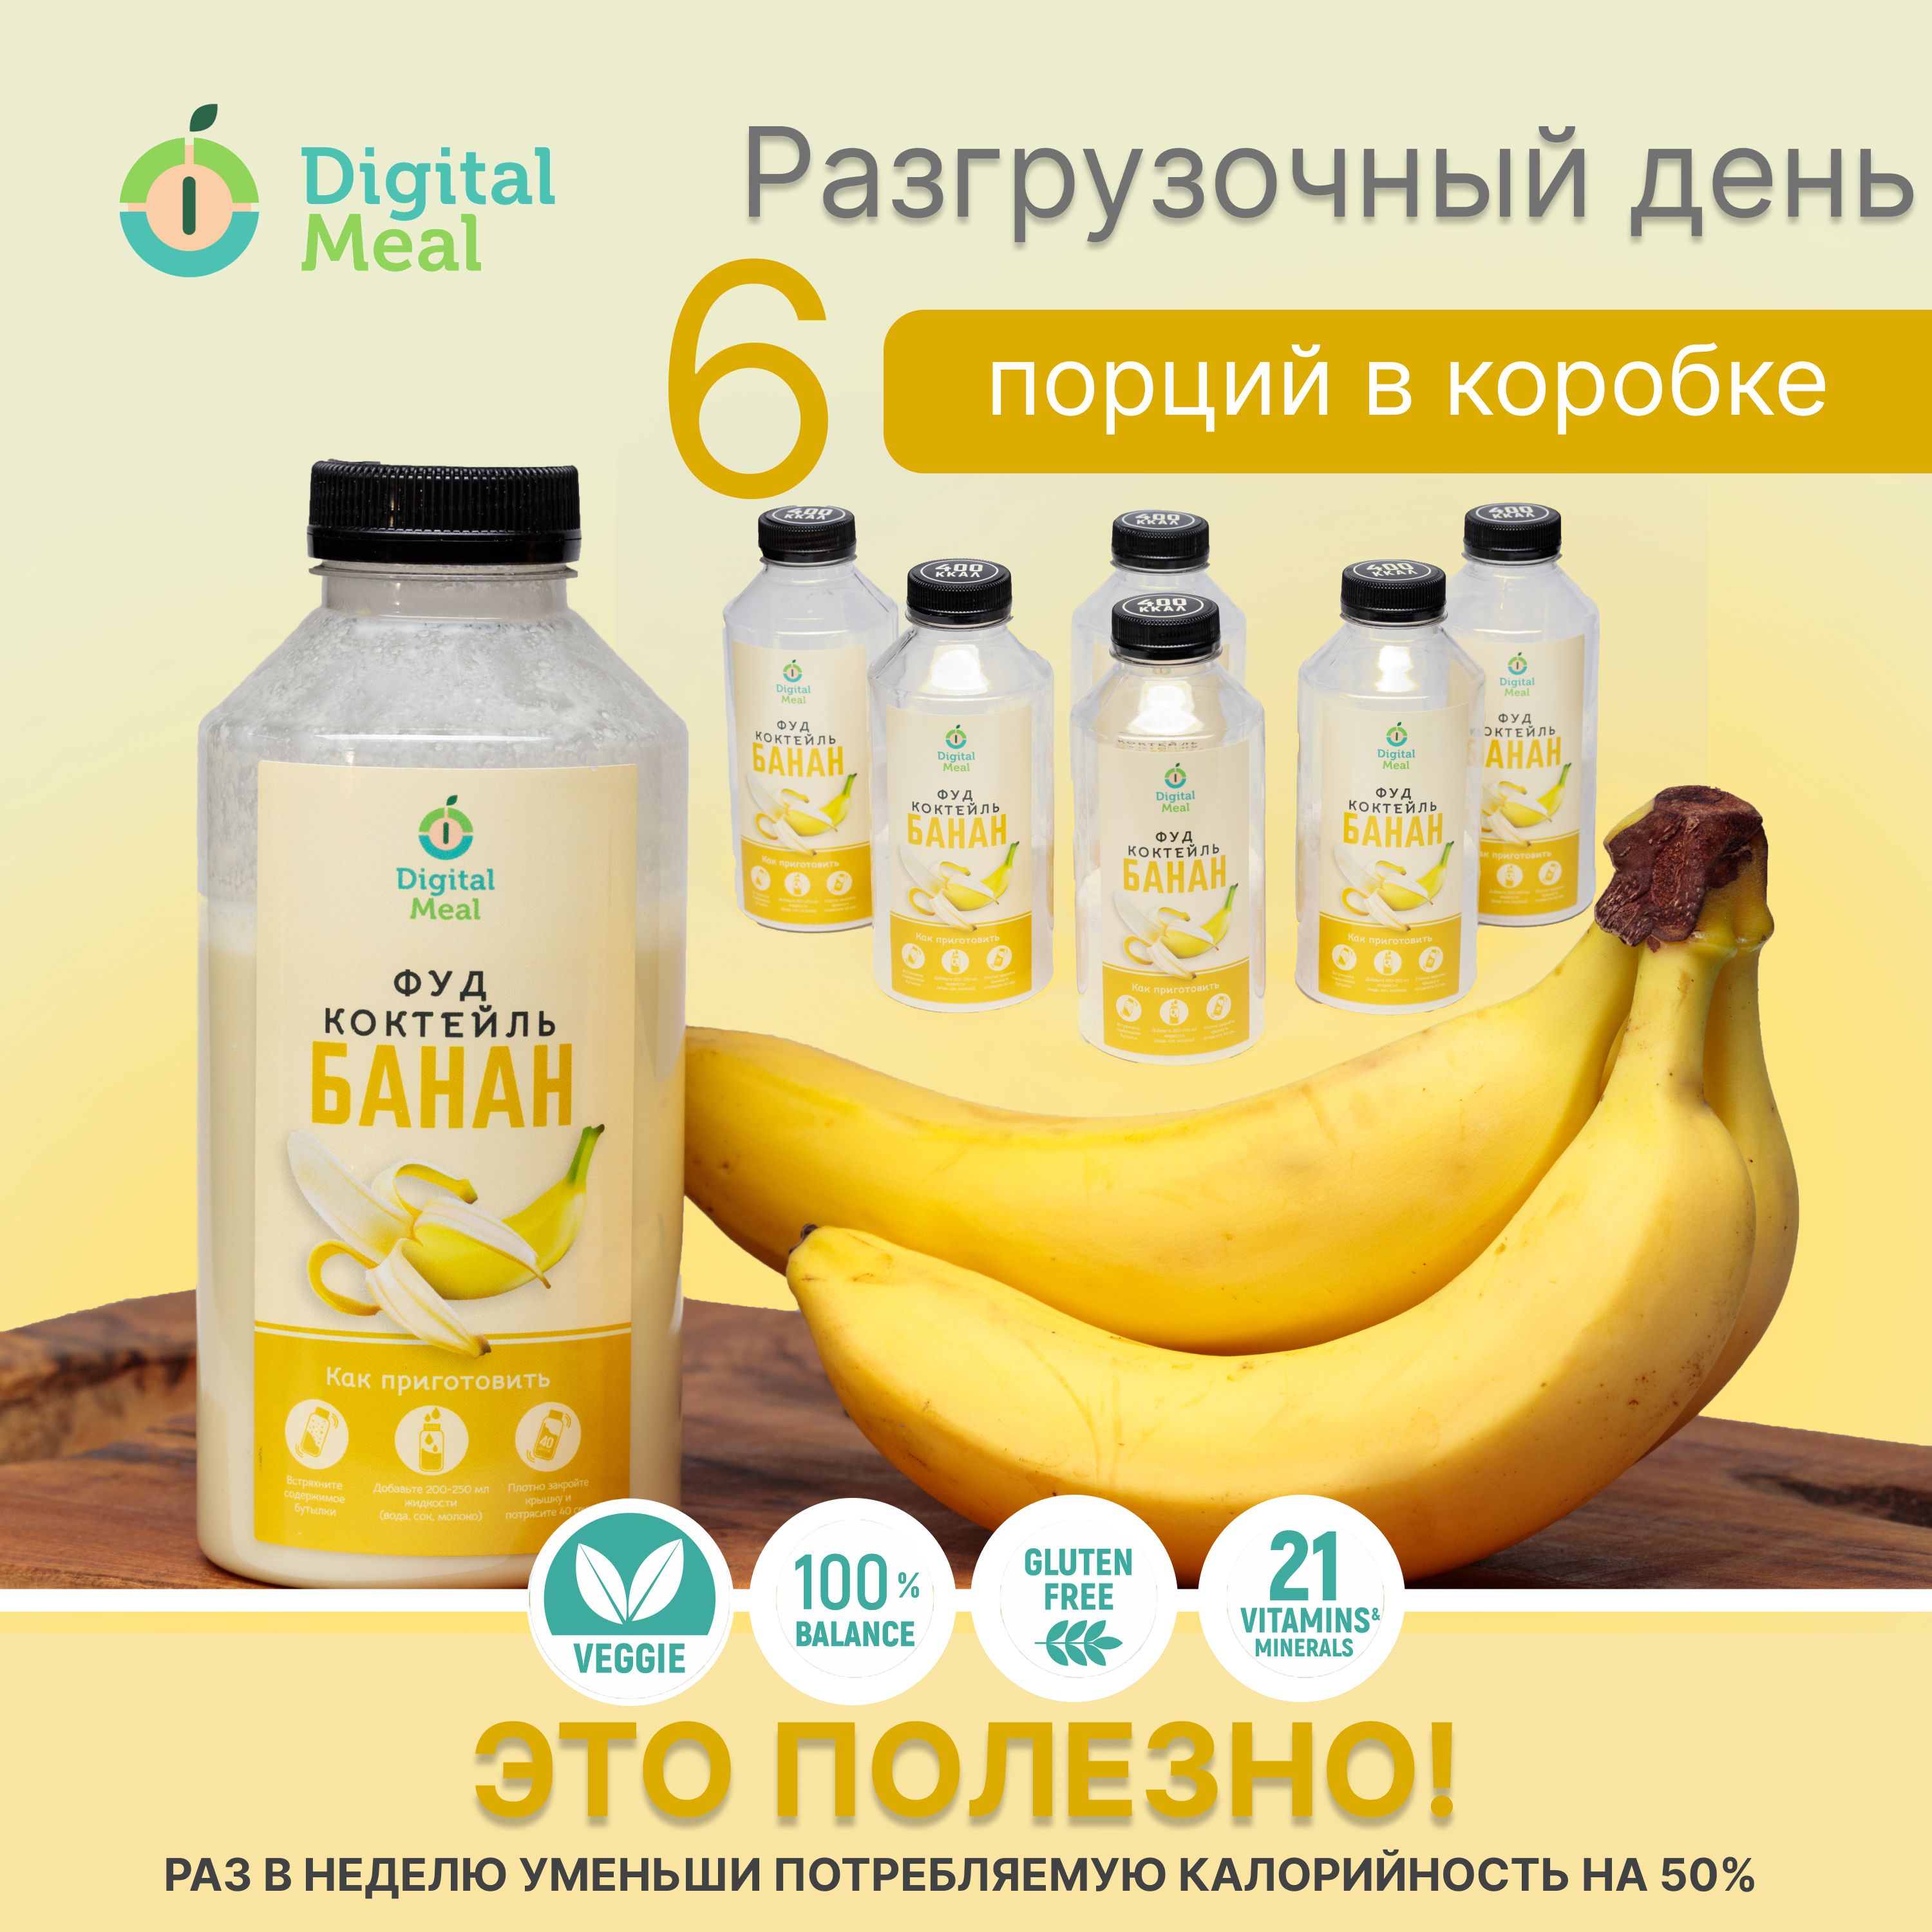 Коктейль Digital Meal заменитель еды для похудения 750 кКал банан, 6 шт по 0,5 л